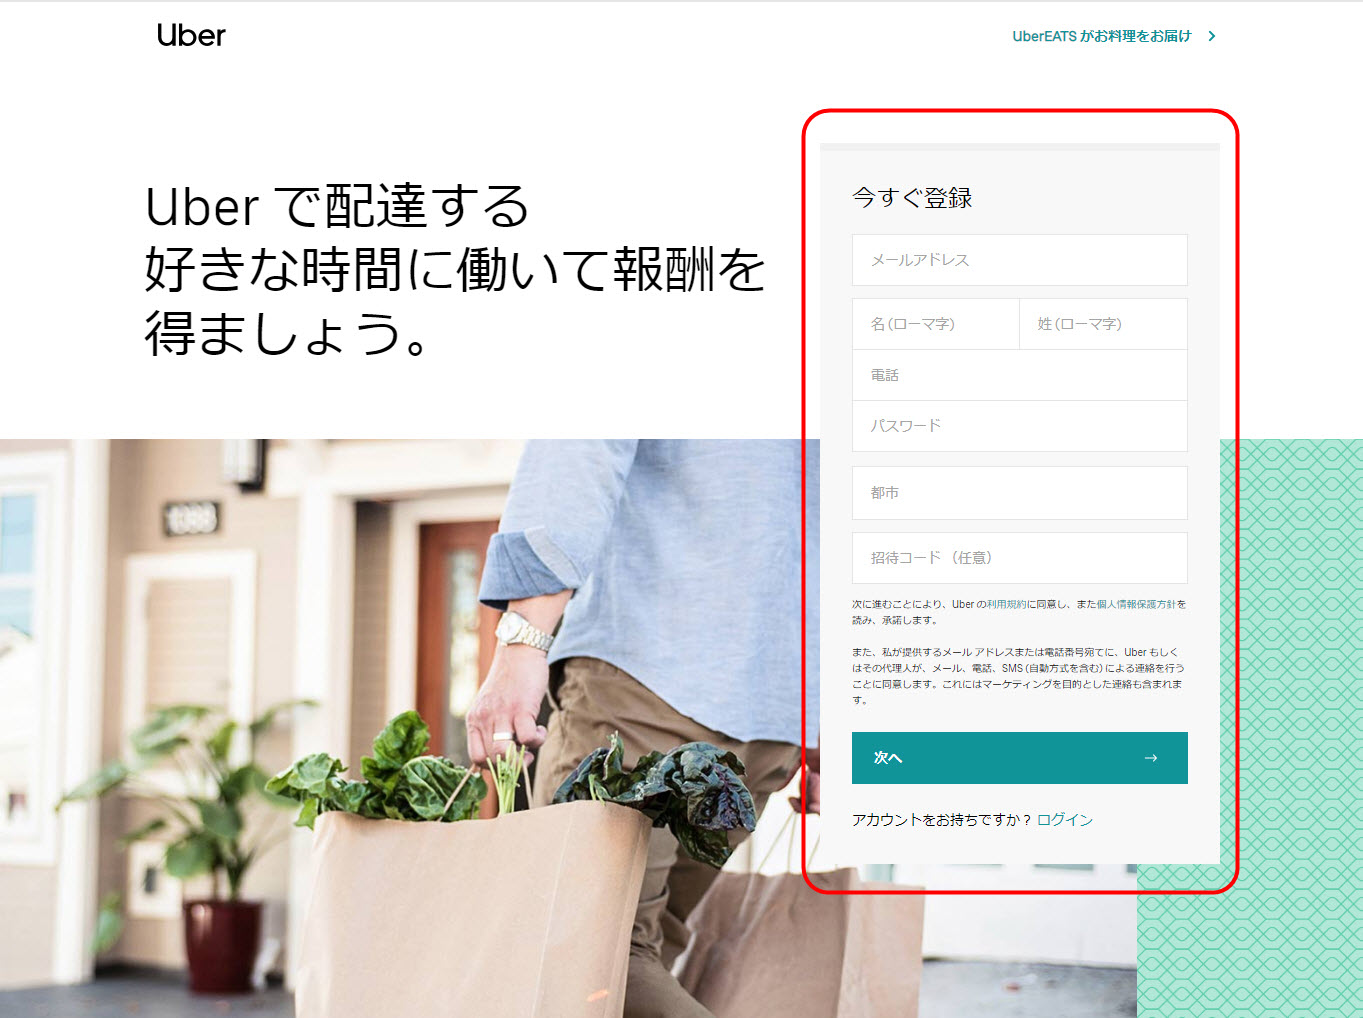 ウーバーイーツ 中野区 登録 東京都 中野 バイト エリア 始める 登録方法 始め方 配達パートナー 対象地域 範囲外 対応地域 サービスエリア外 UberEats Uber Eats